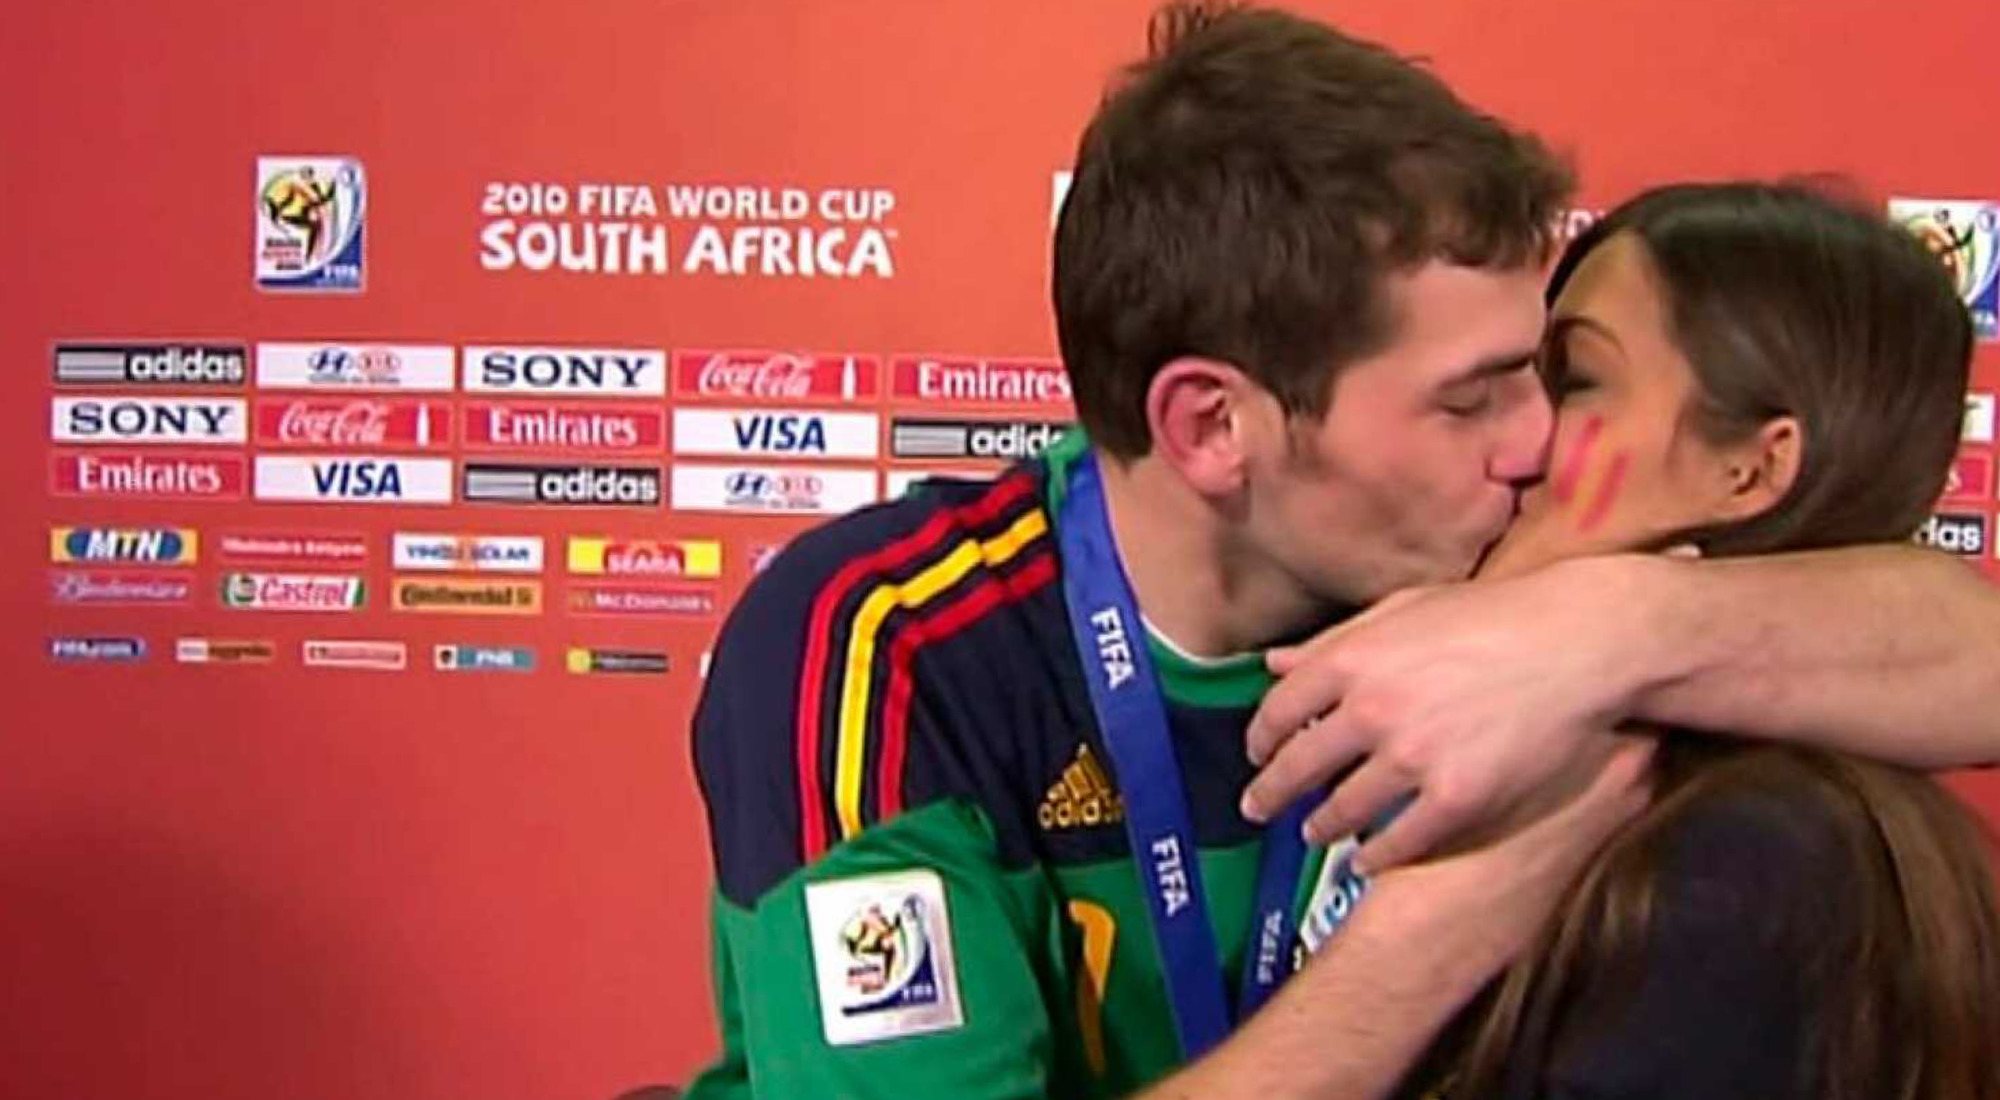 Sara Carbonero e Iker Casillas durante la final del Mundial de Fútbol de 2010, uno de los momentos televisados de Informativos Telecinco más recordados